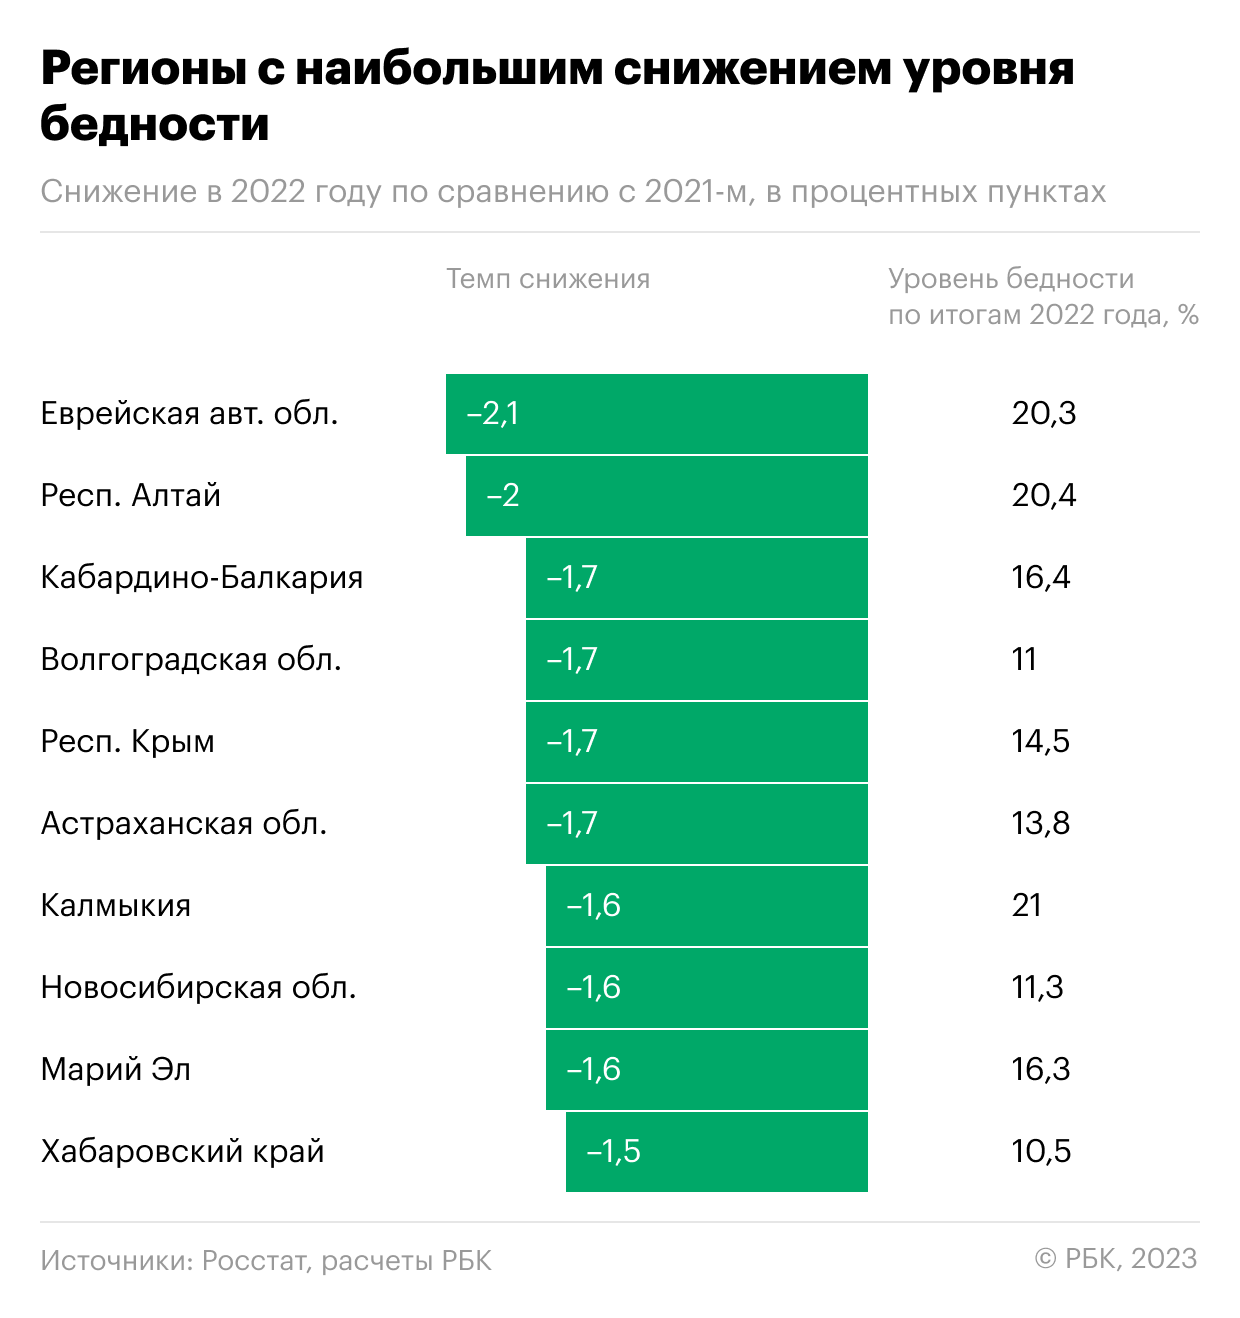 За чертой бедности впервые оказалось меньше 10% россиян